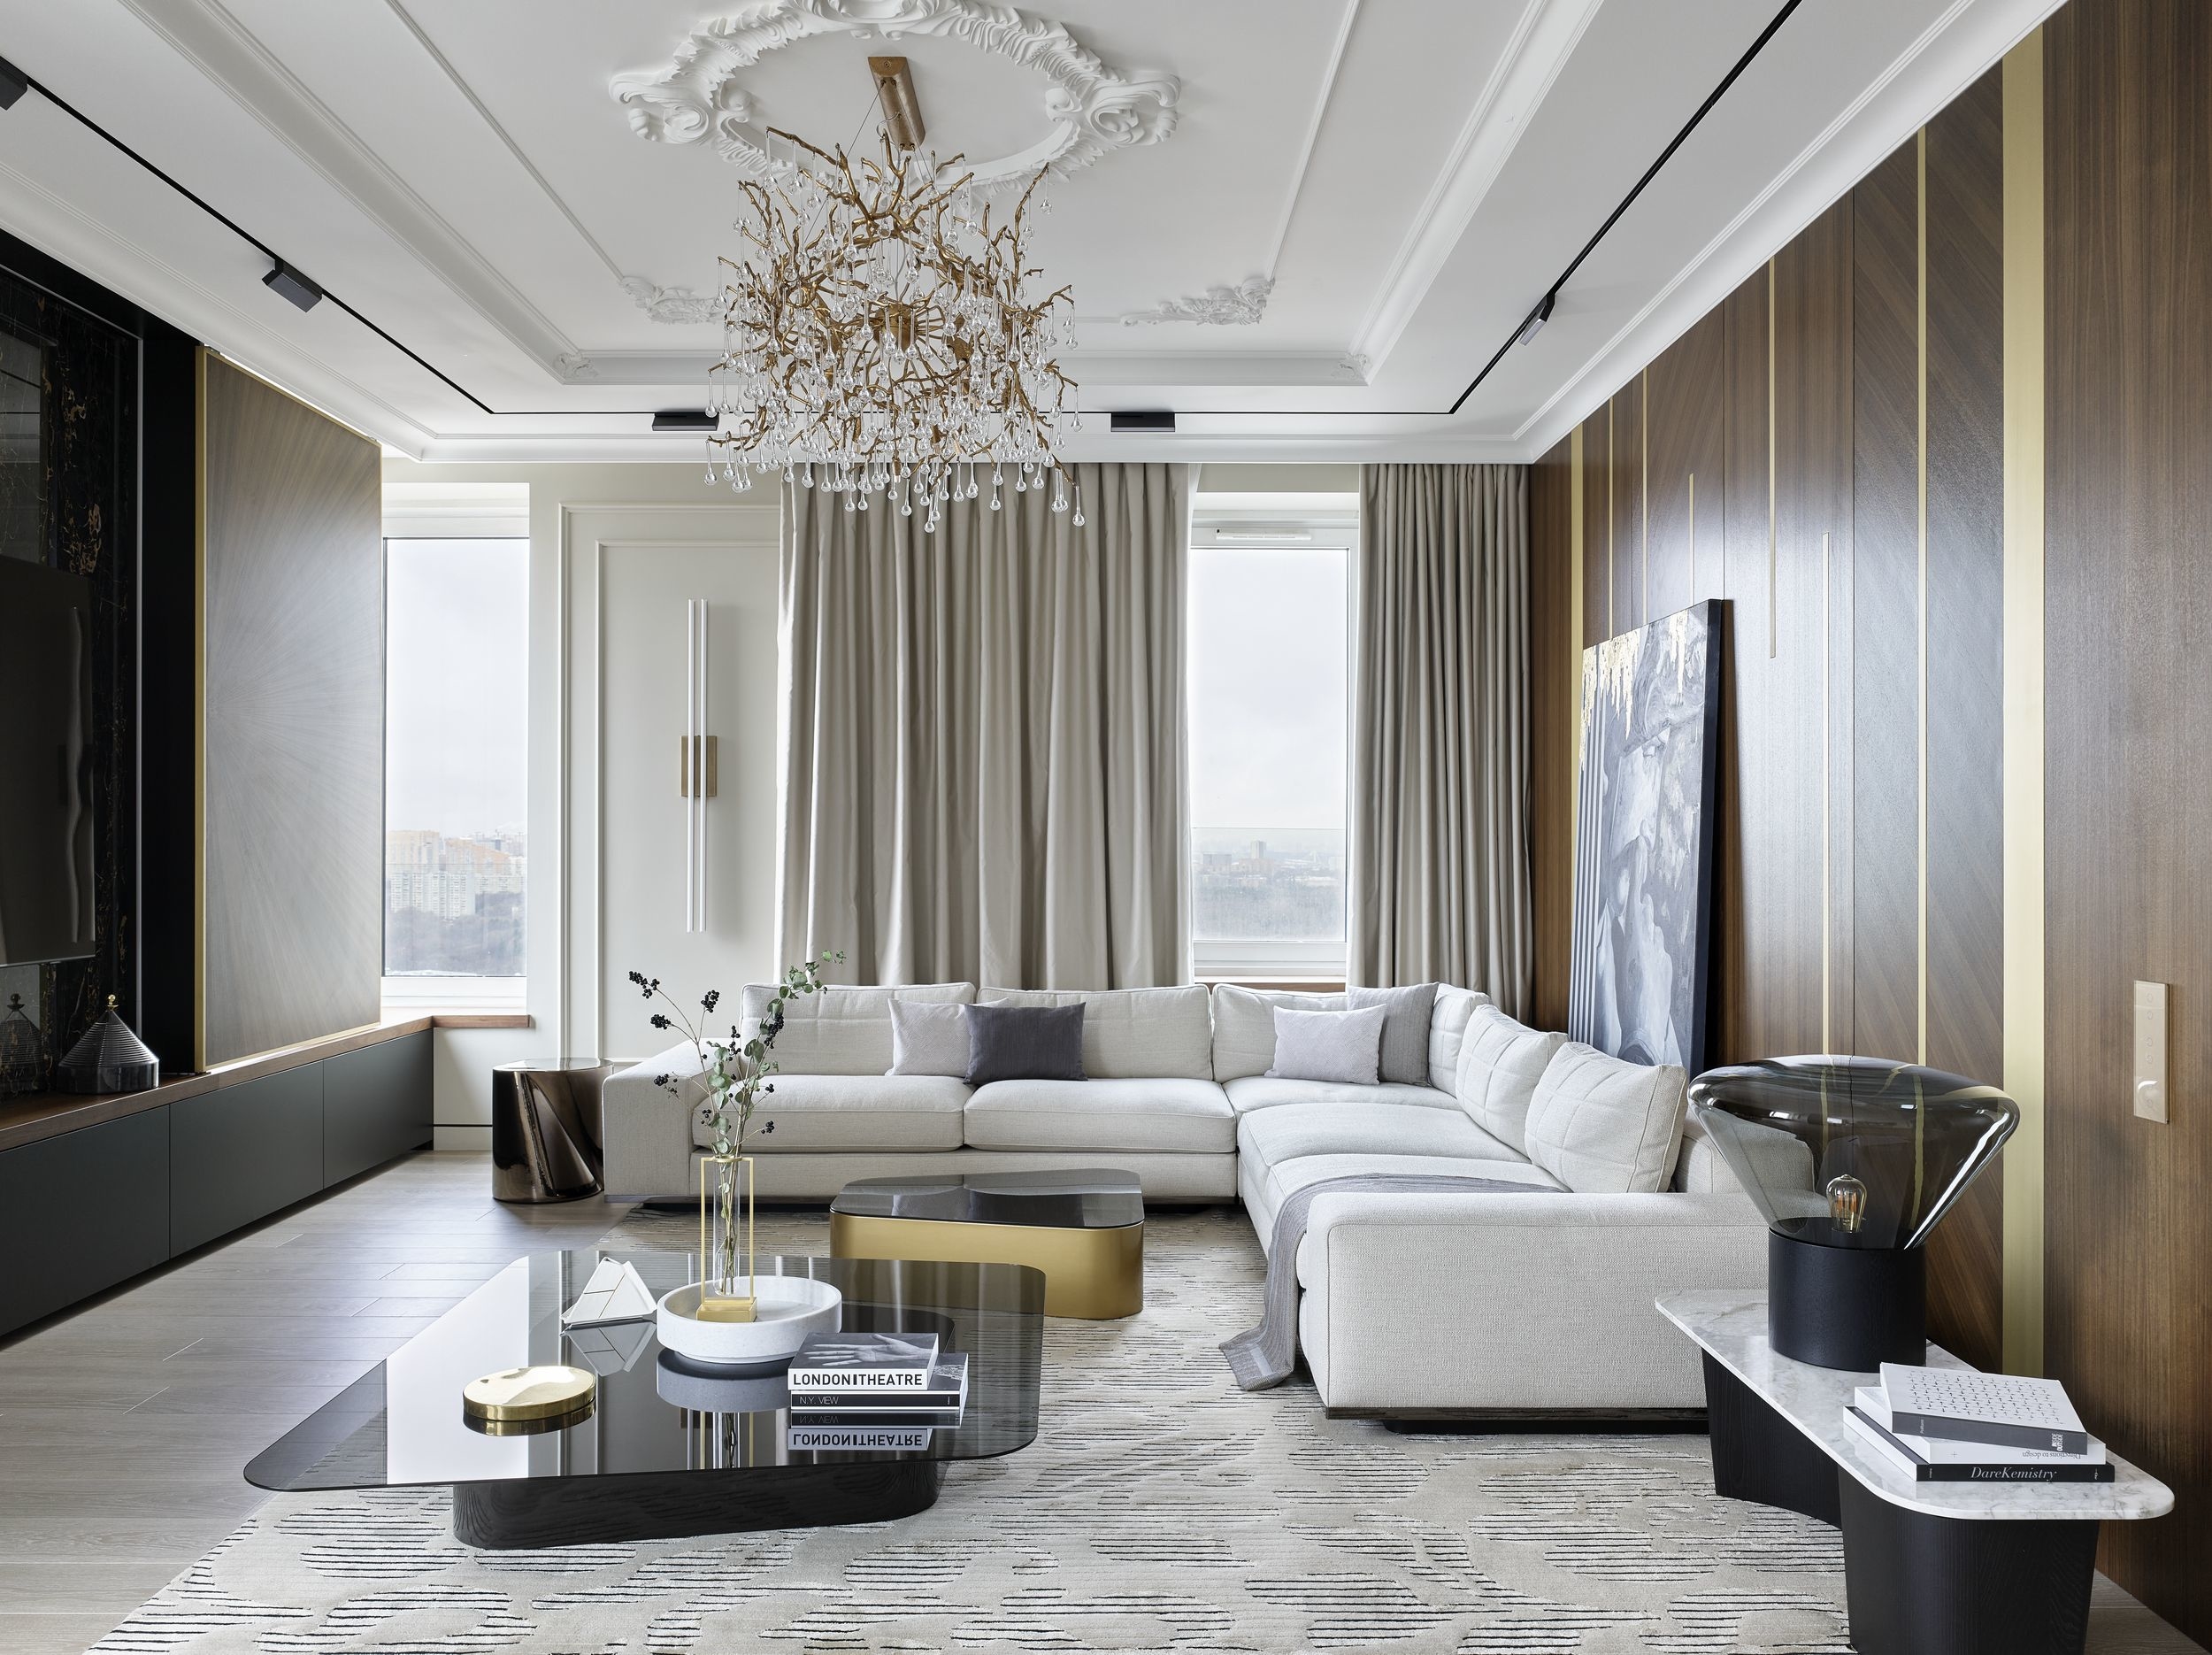 Как дизайнеры интерпретировали классику: модный интерьер московской квартиры